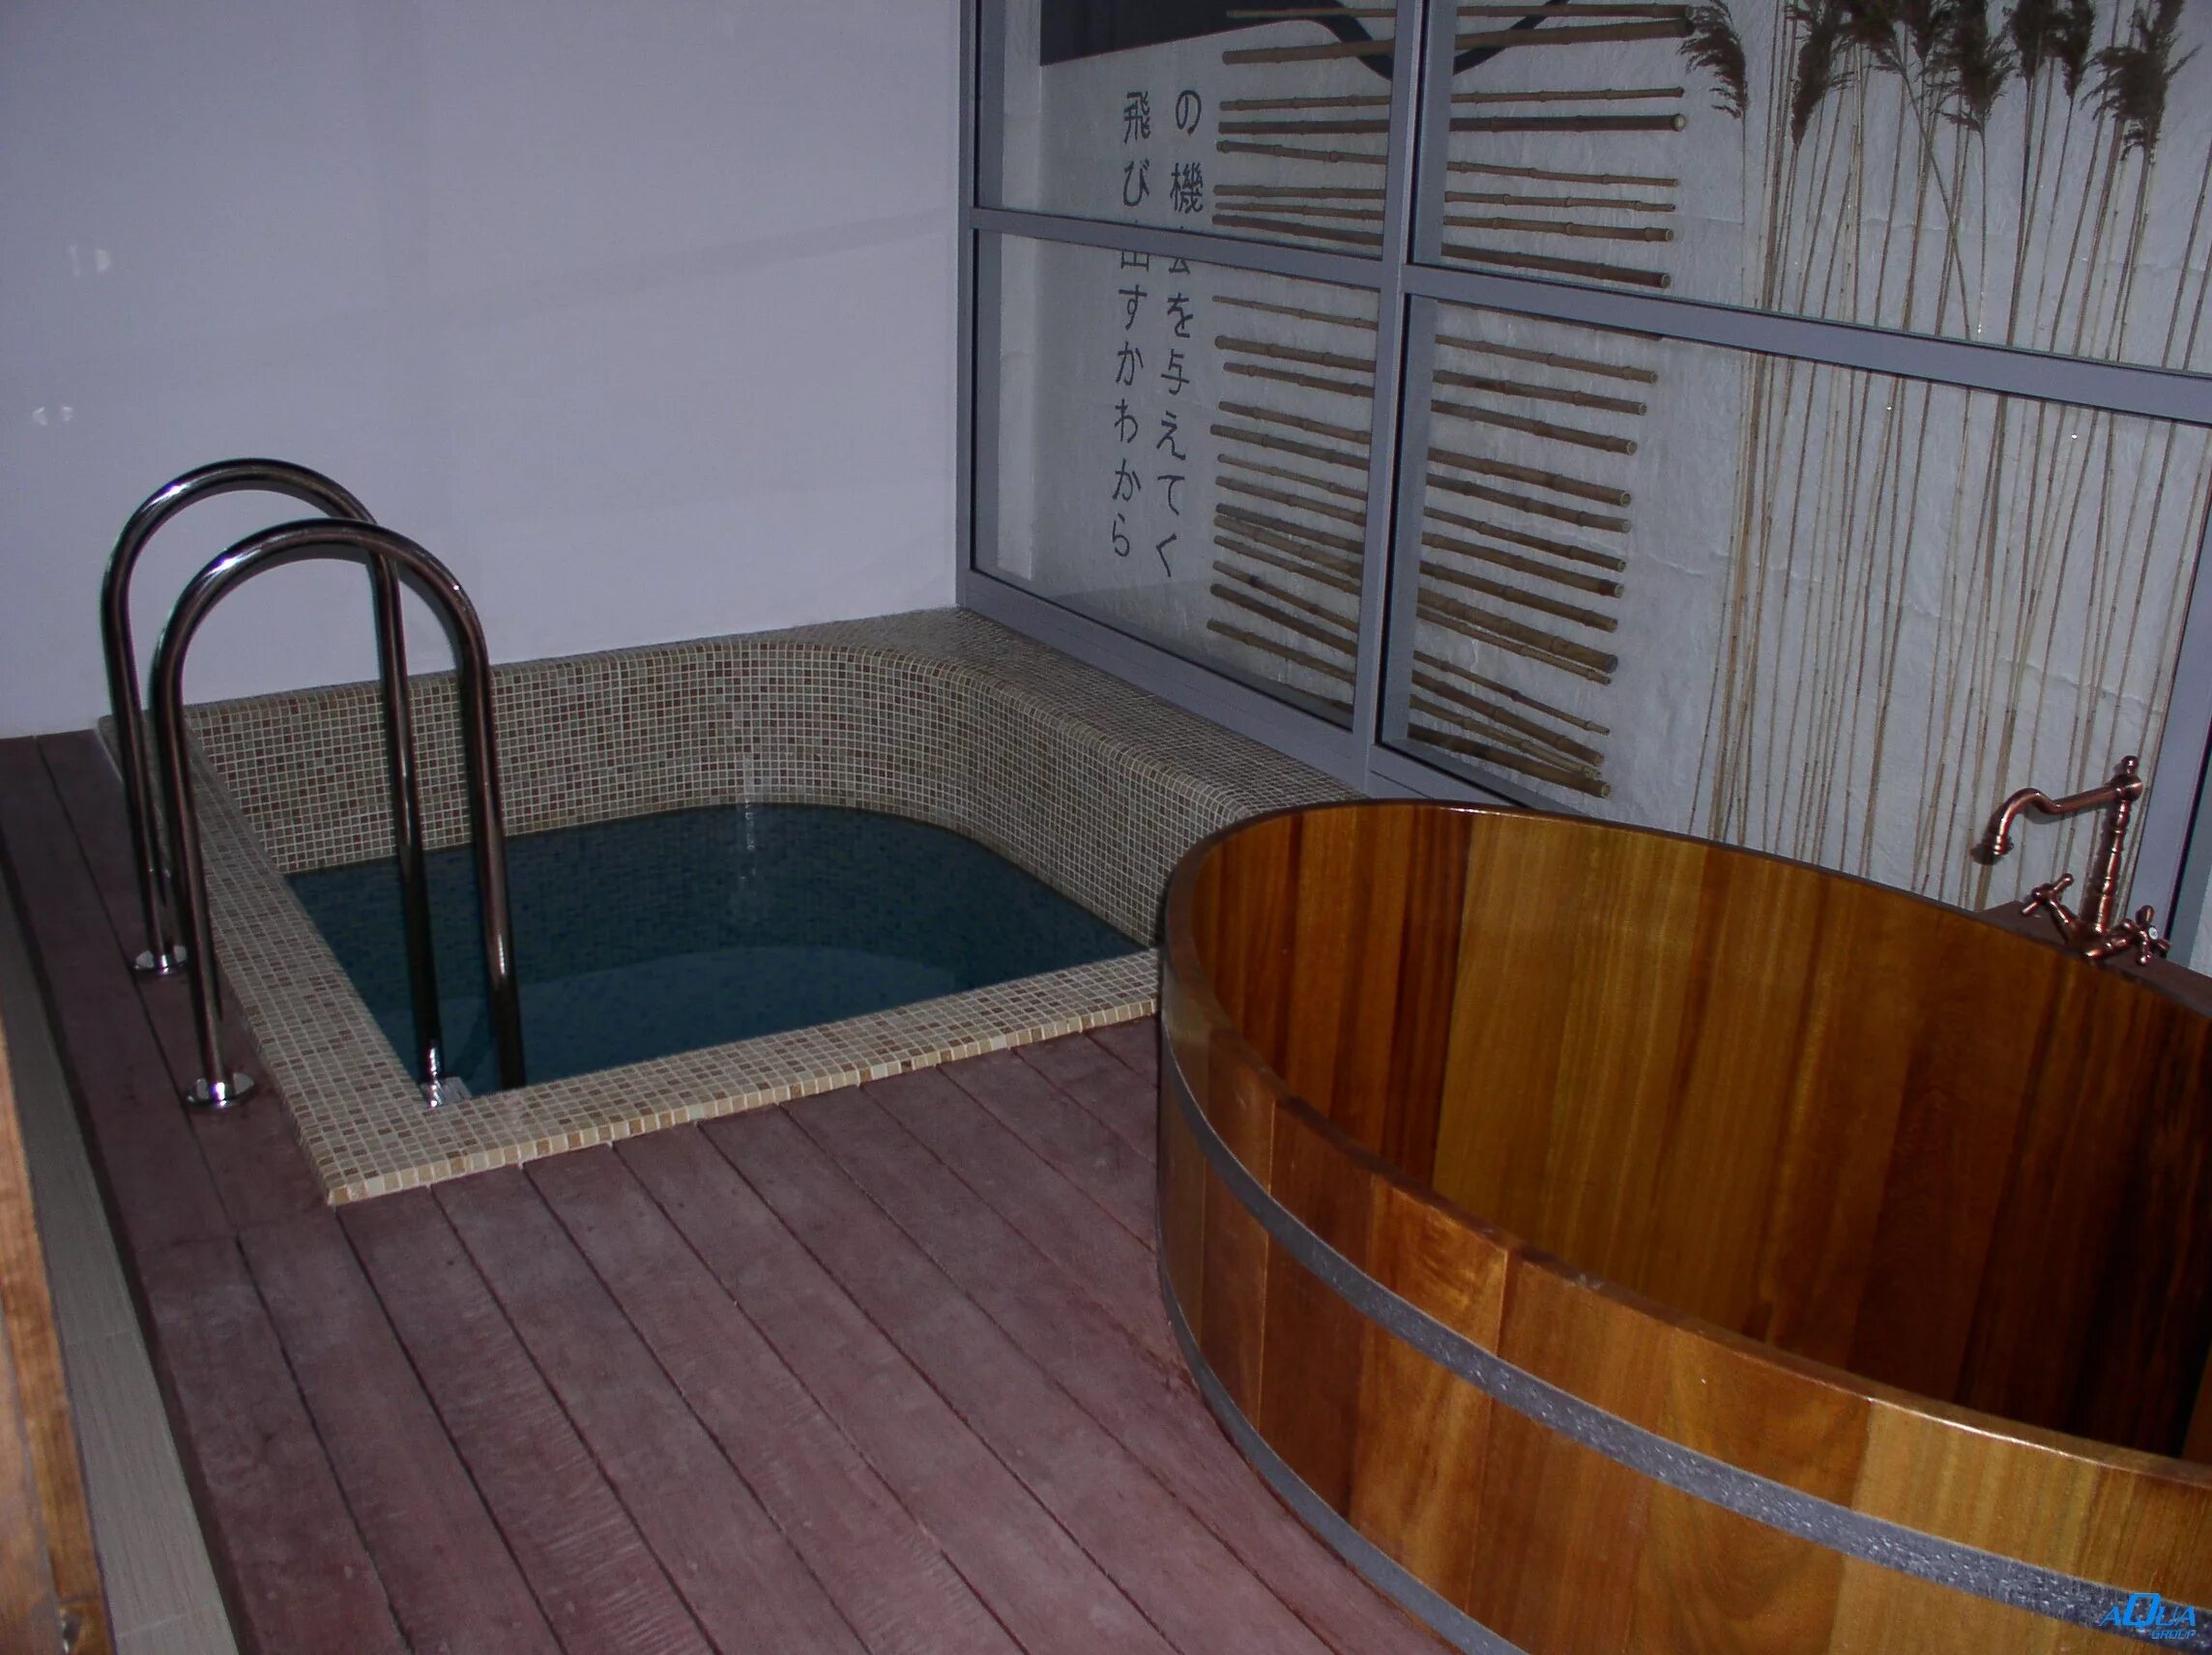 Купель для бани. Небольшой бассейн в бане. Мини бассейн в бане. Баня с купелью внутри. Баня купель снять